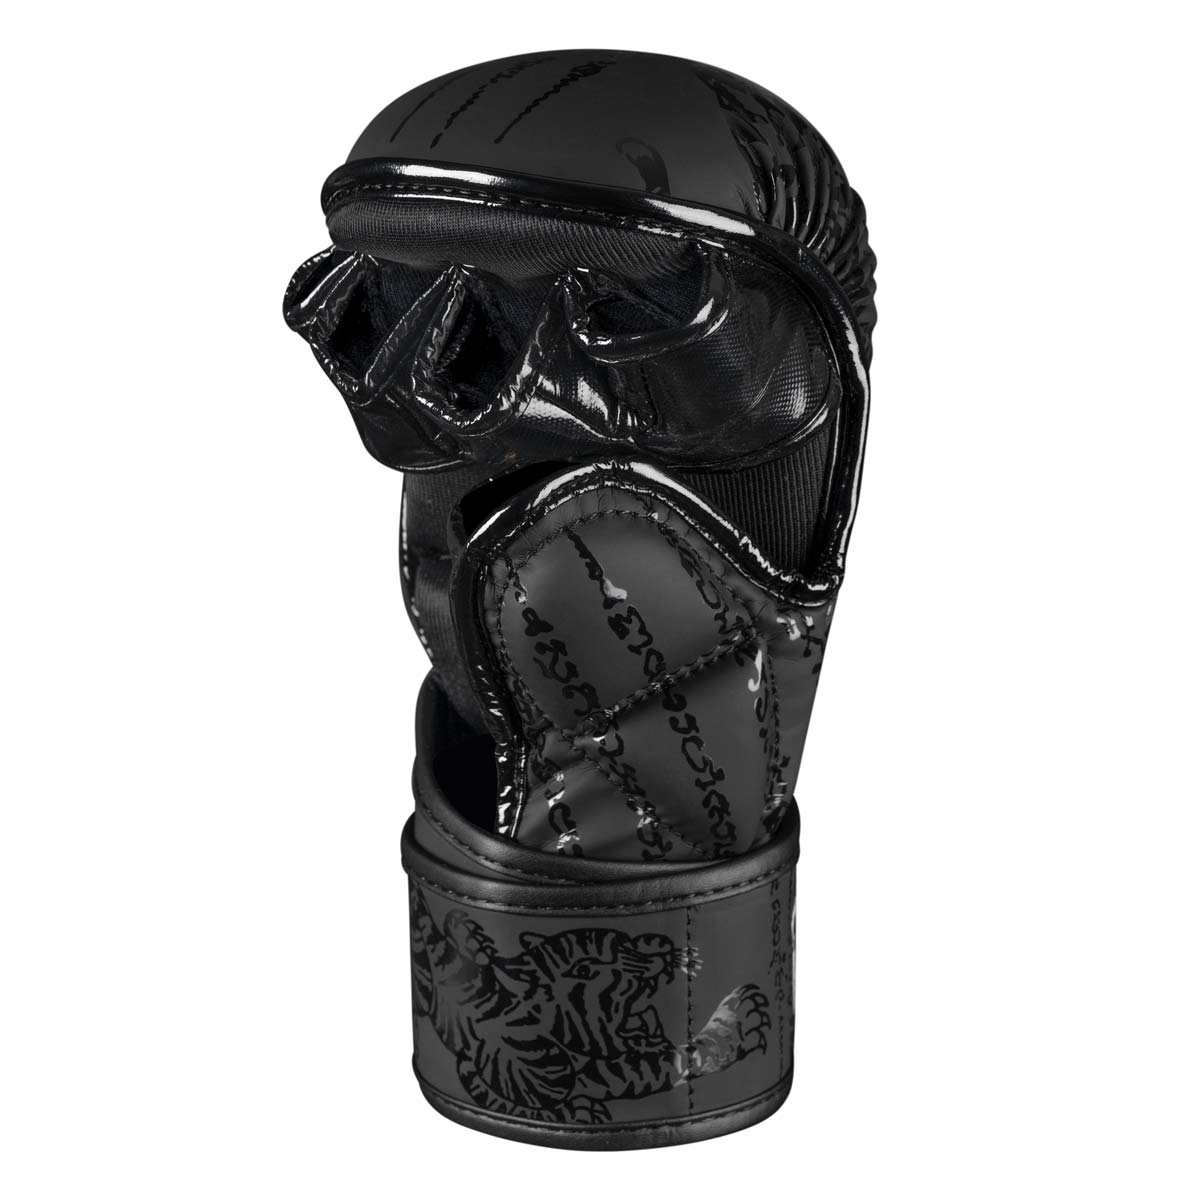 Die Phantom Muay Thai Kampfsport Sparringshandschuhe verfügen über eine dicke Polsterung, zusätzlichen Daumenschutz sowie eine stabile Unterstützung des Handgelenks, sowie angenehme Fingerschlaufen. 